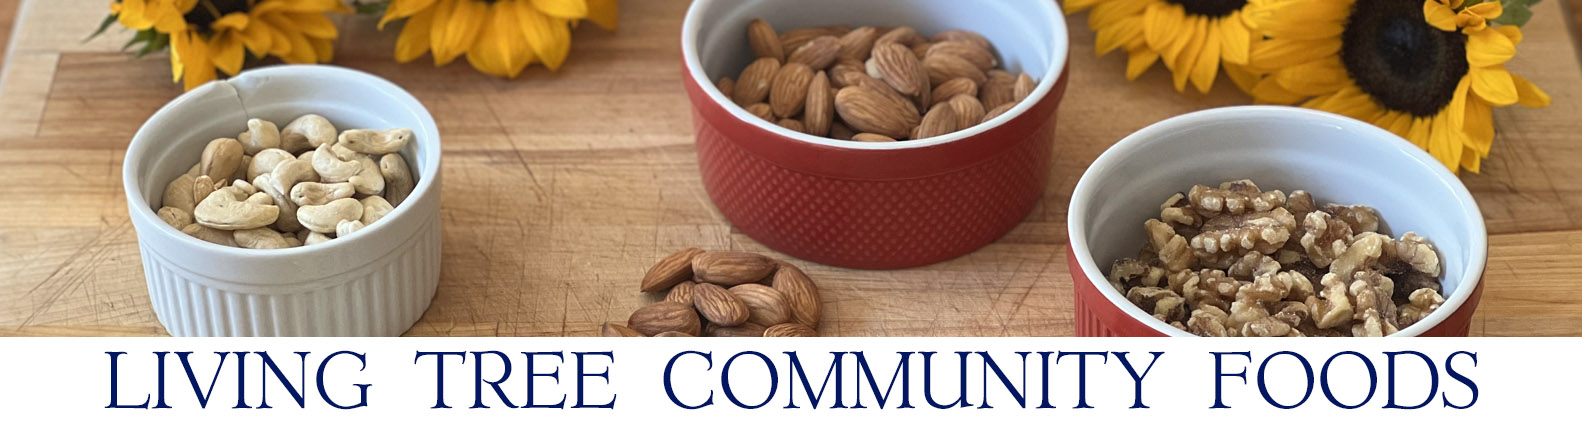 Almond Cashew Walnut Newsletter Header